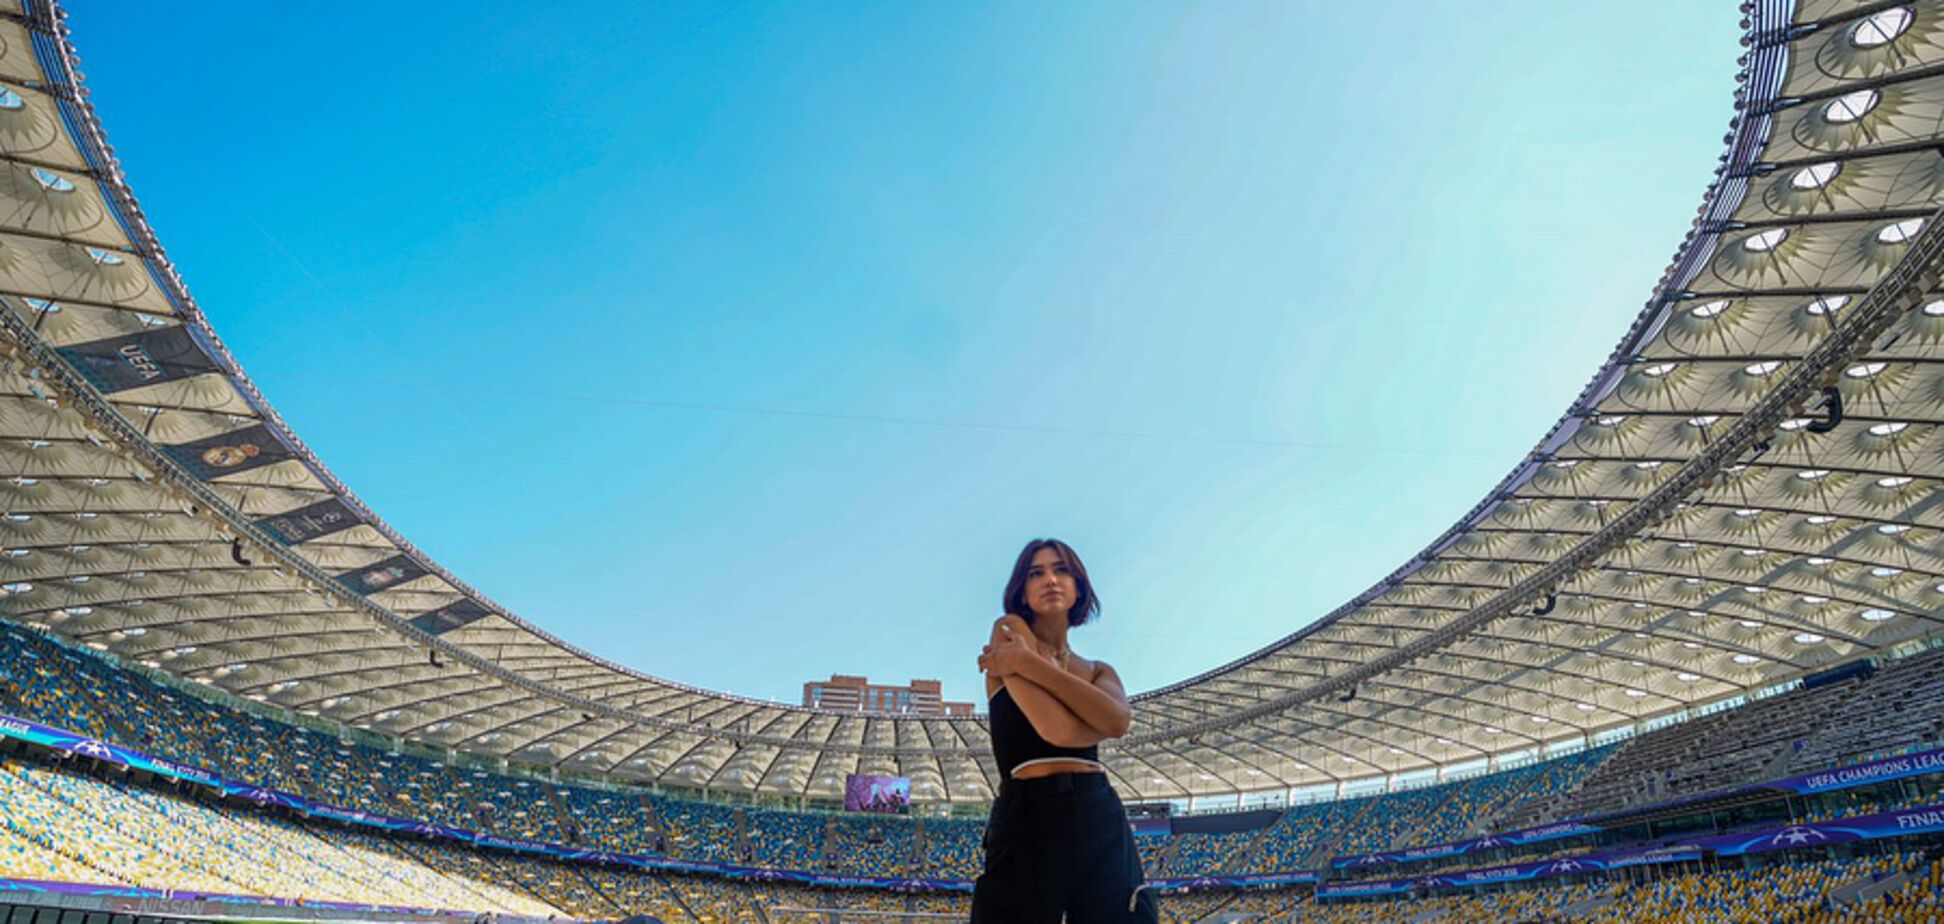 Британська співачка влаштувала яскраву фотосесію на НСК 'Олімпійський', викликавши захоплення в мережі